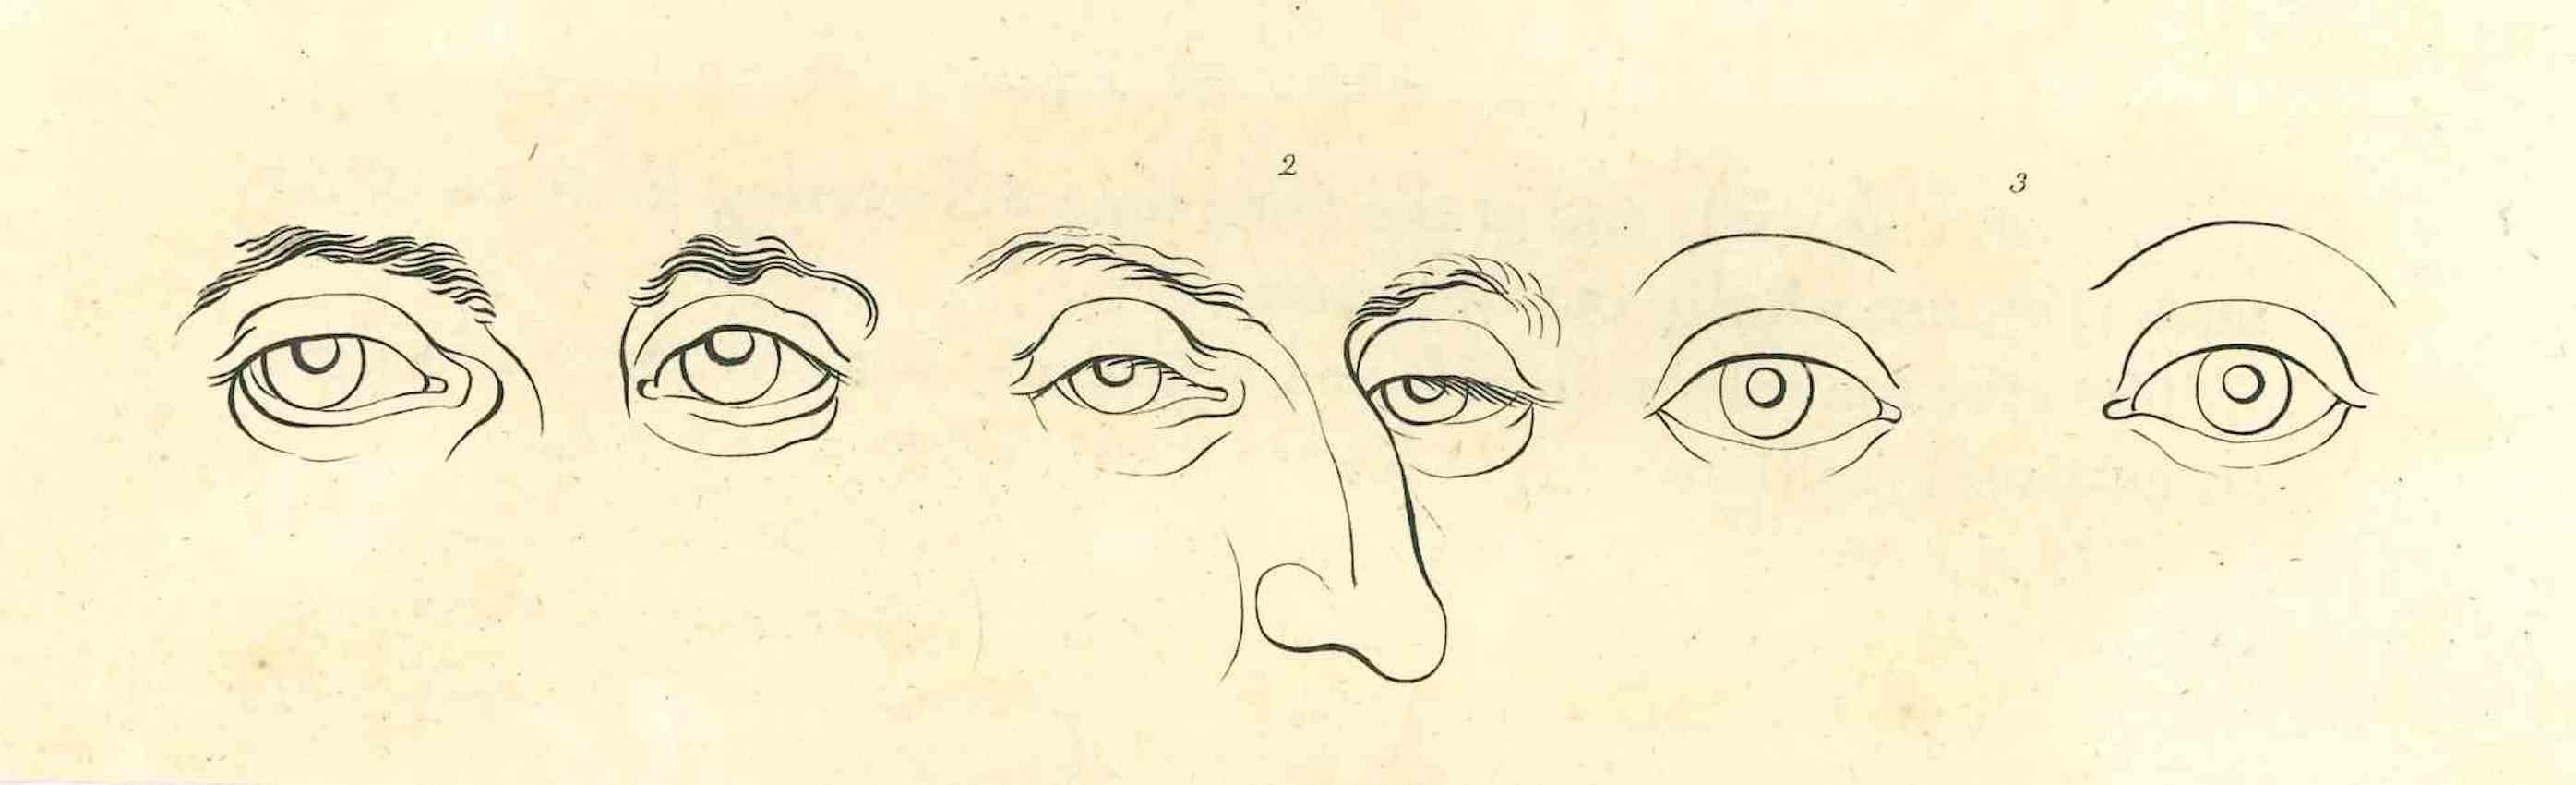 The Physiognomy - The Eyes ist eine Original-Radierung von Thomas Holloway für Johann Caspar Lavaters "Essays on Physiognomy, Designed to Promote the Knowledge and the Love of Mankind", London, Bensley, 1810. 

Gute Bedingungen.

Mit Notizen auf der